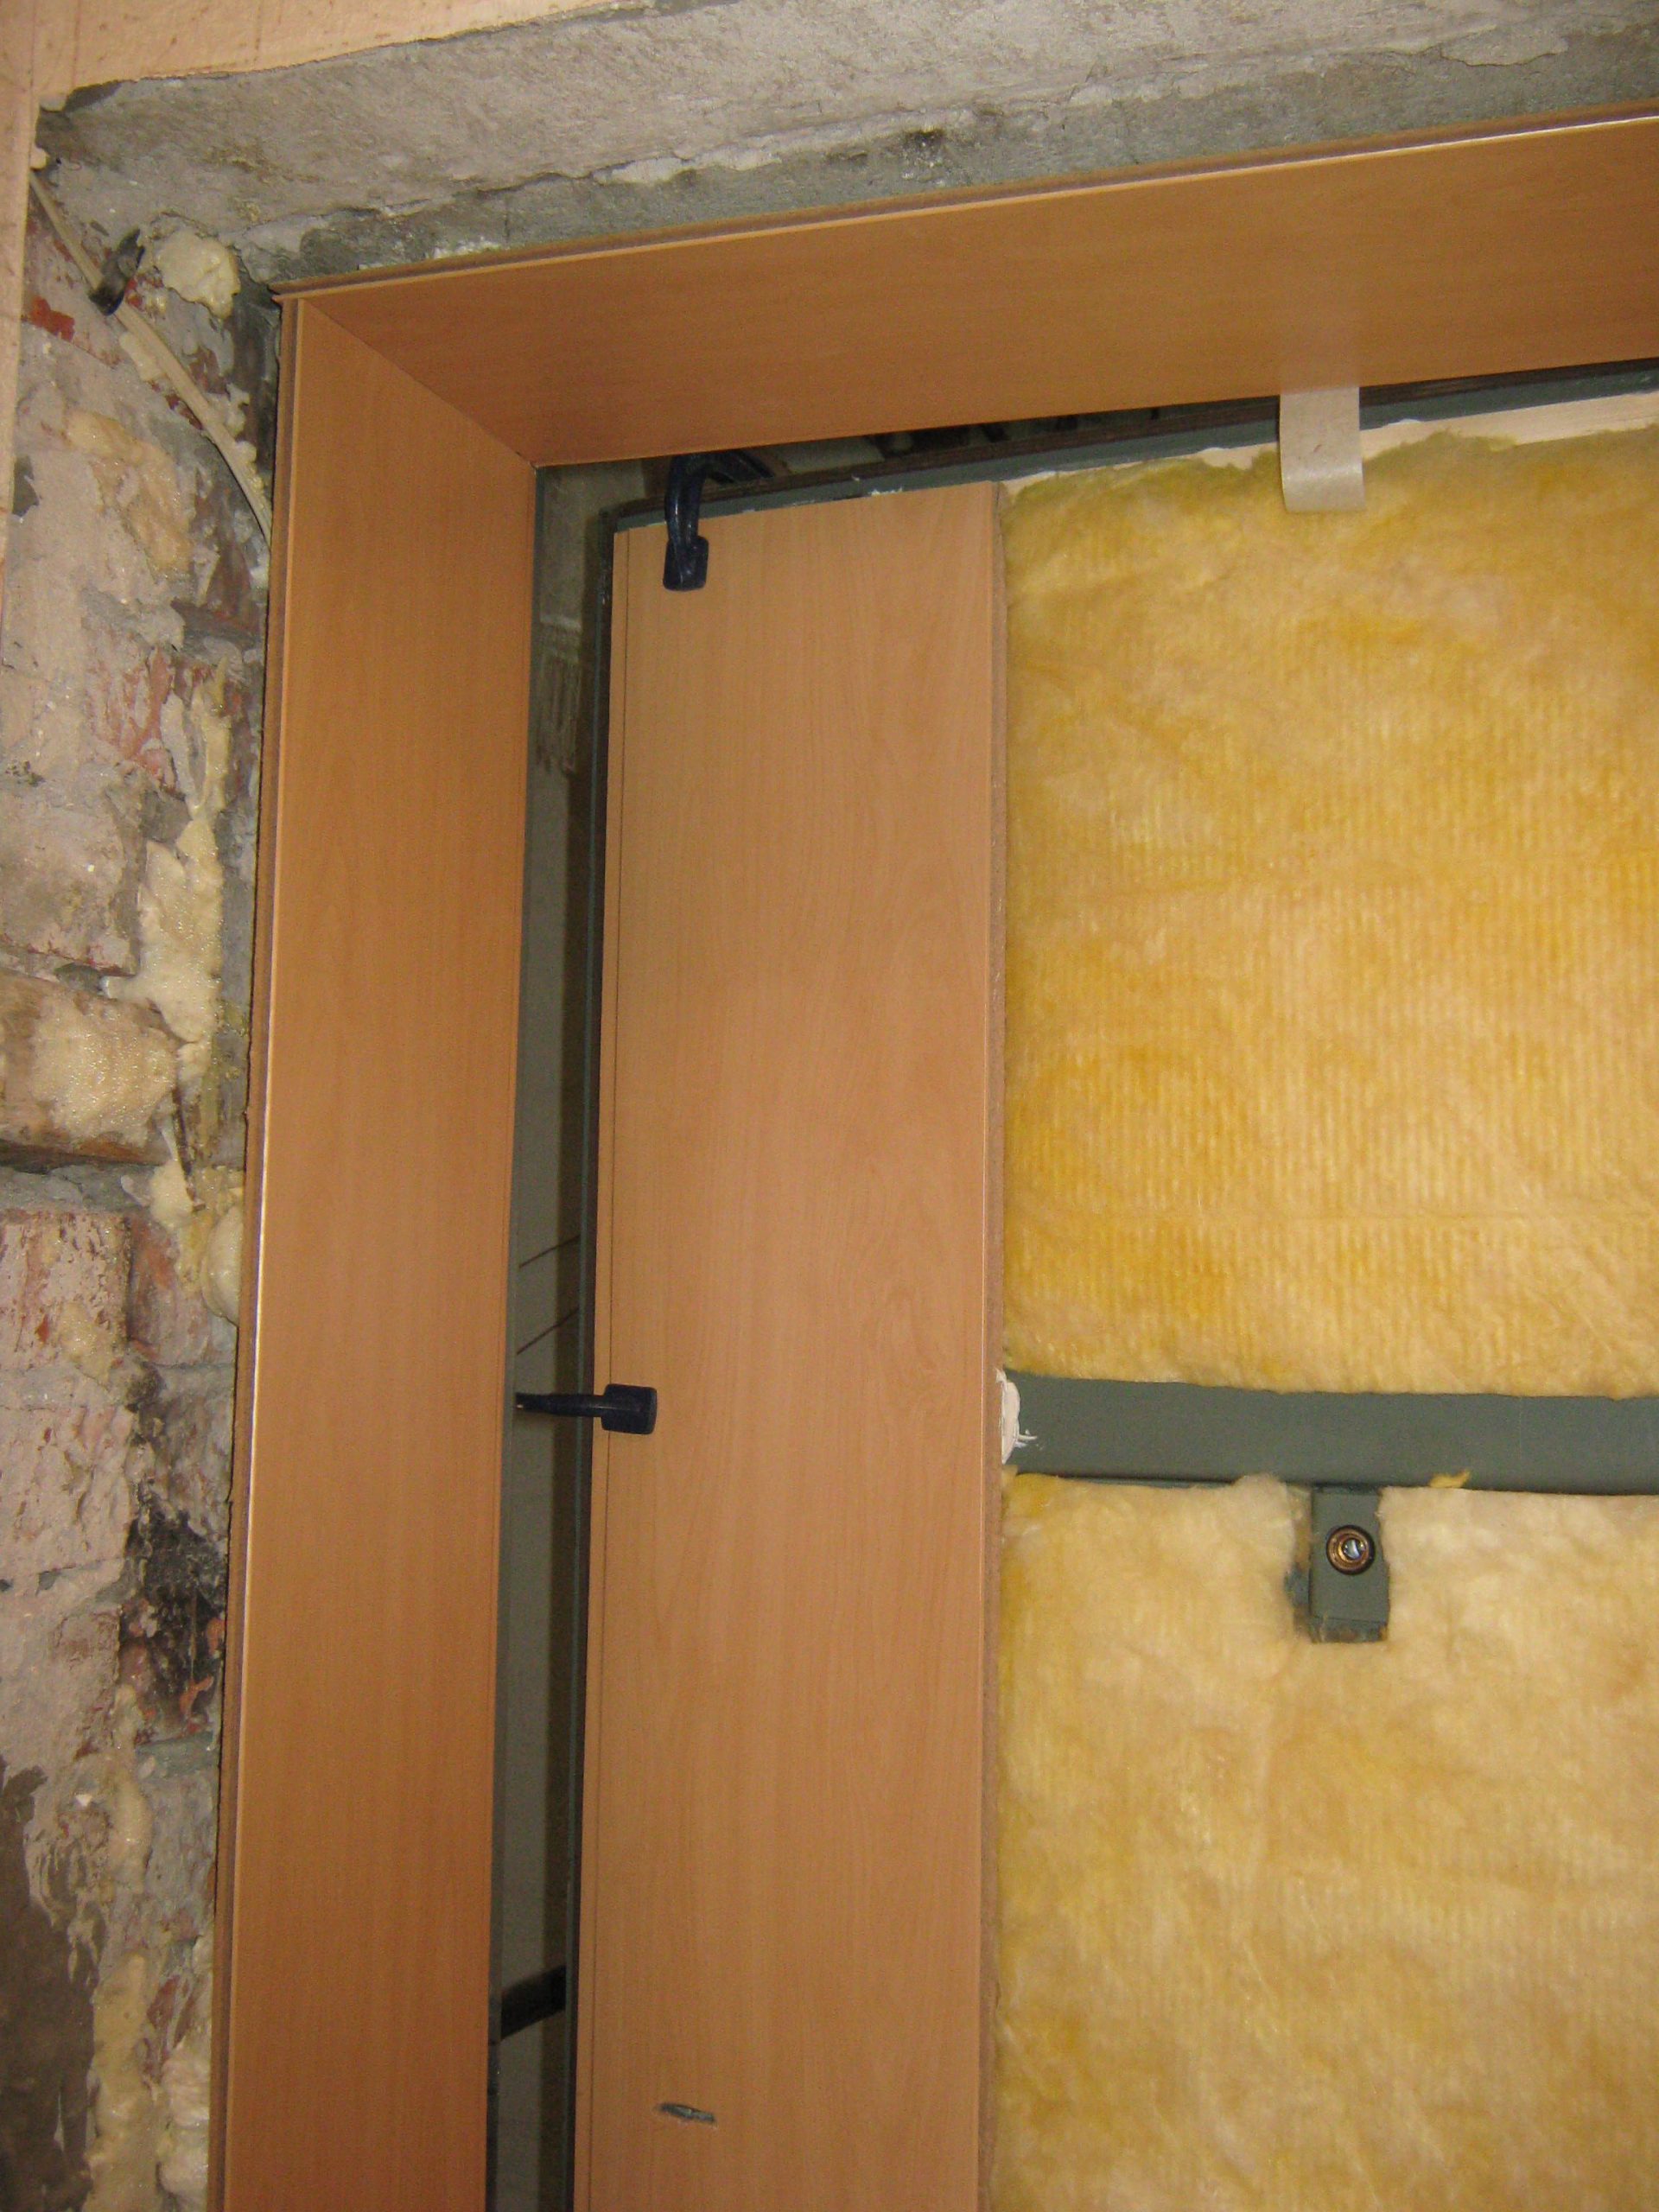 Откосы для входных дверей из мдф и другие варианты отделки стен изнутри и снаружи: как сделать своими руками после установки дверной конструкции в квартире?